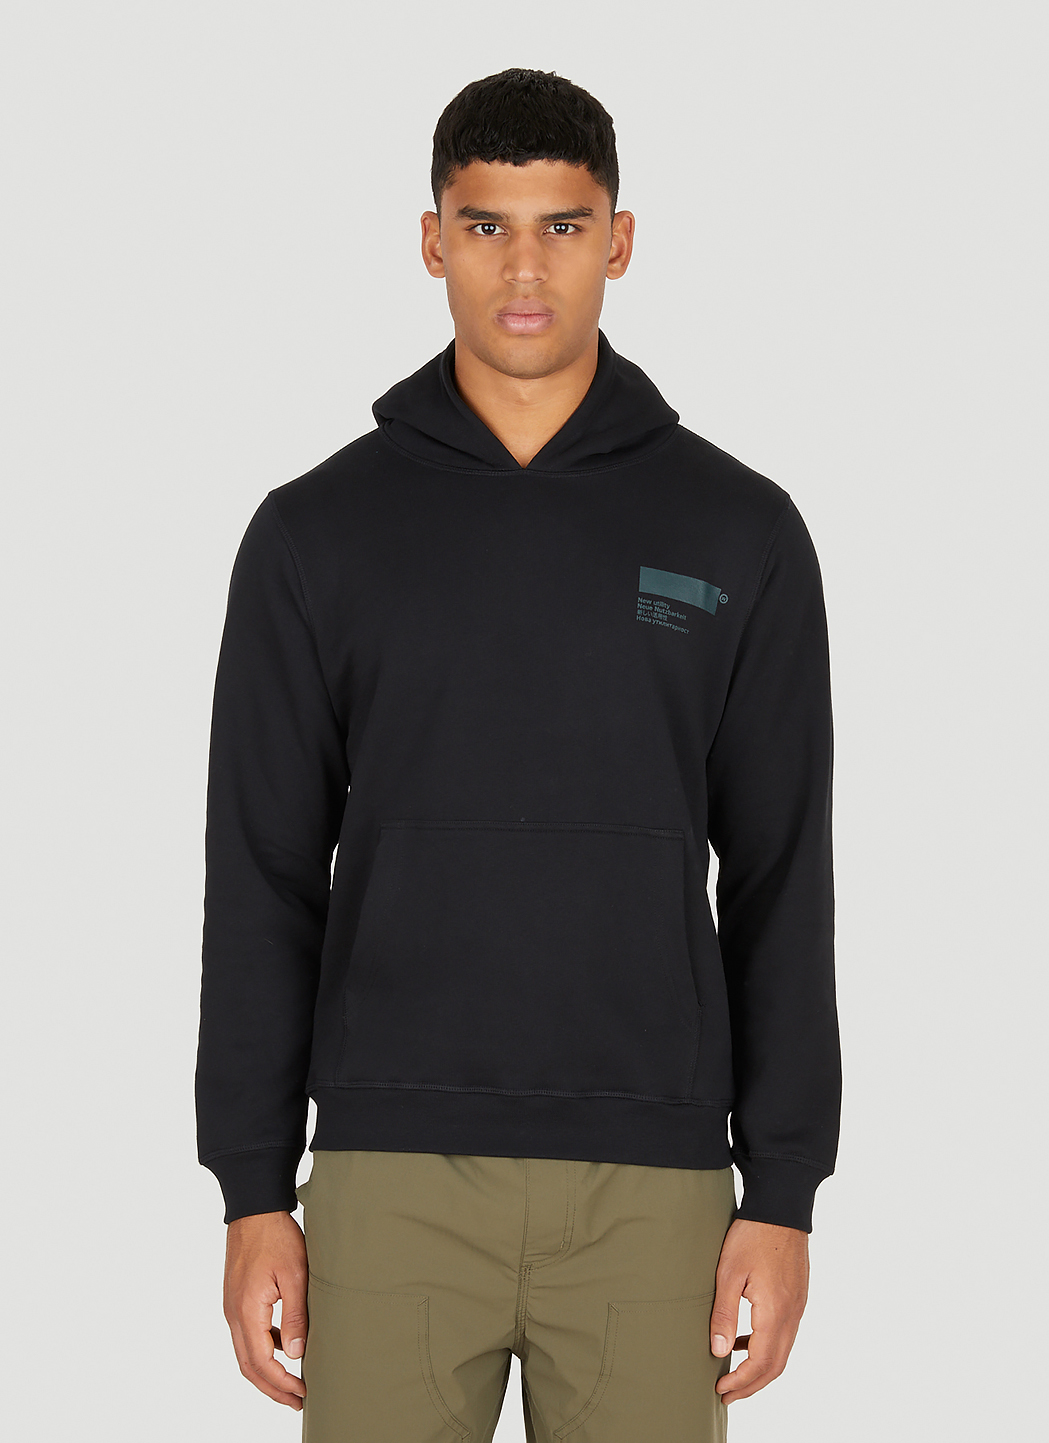 ventil midler server AFFXWRKS Unisex Standardised Hooded Sweatshirt in Black | Dolce&Gabbana®